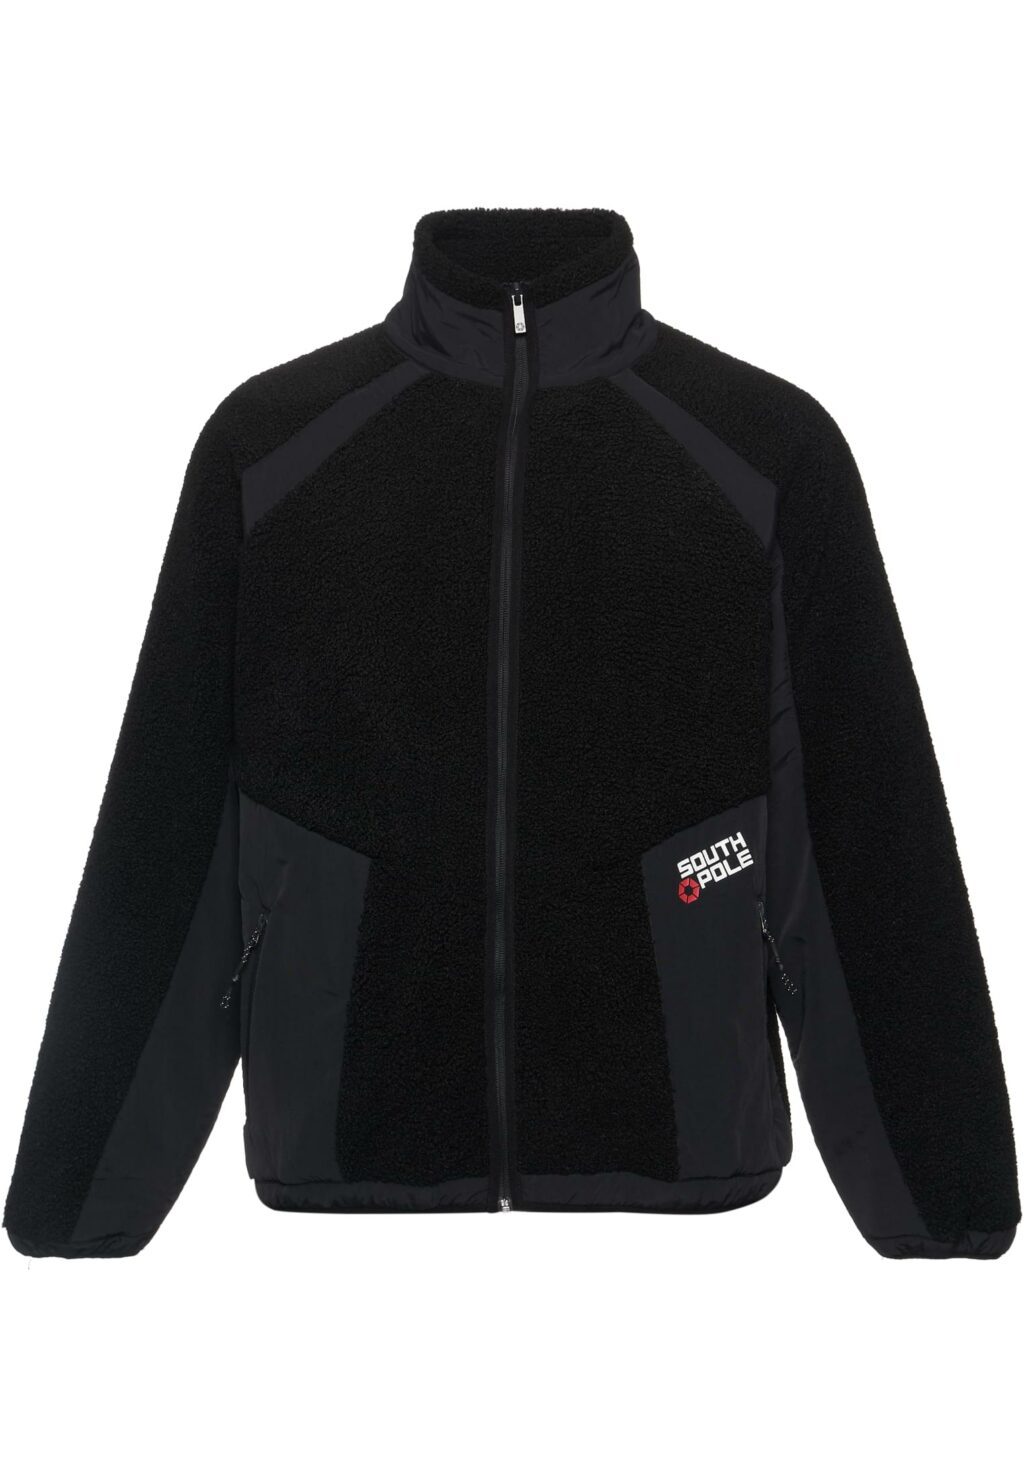 PM233-005-1 OG Logo 02 Bonded Sherpa Jacket black 6040329